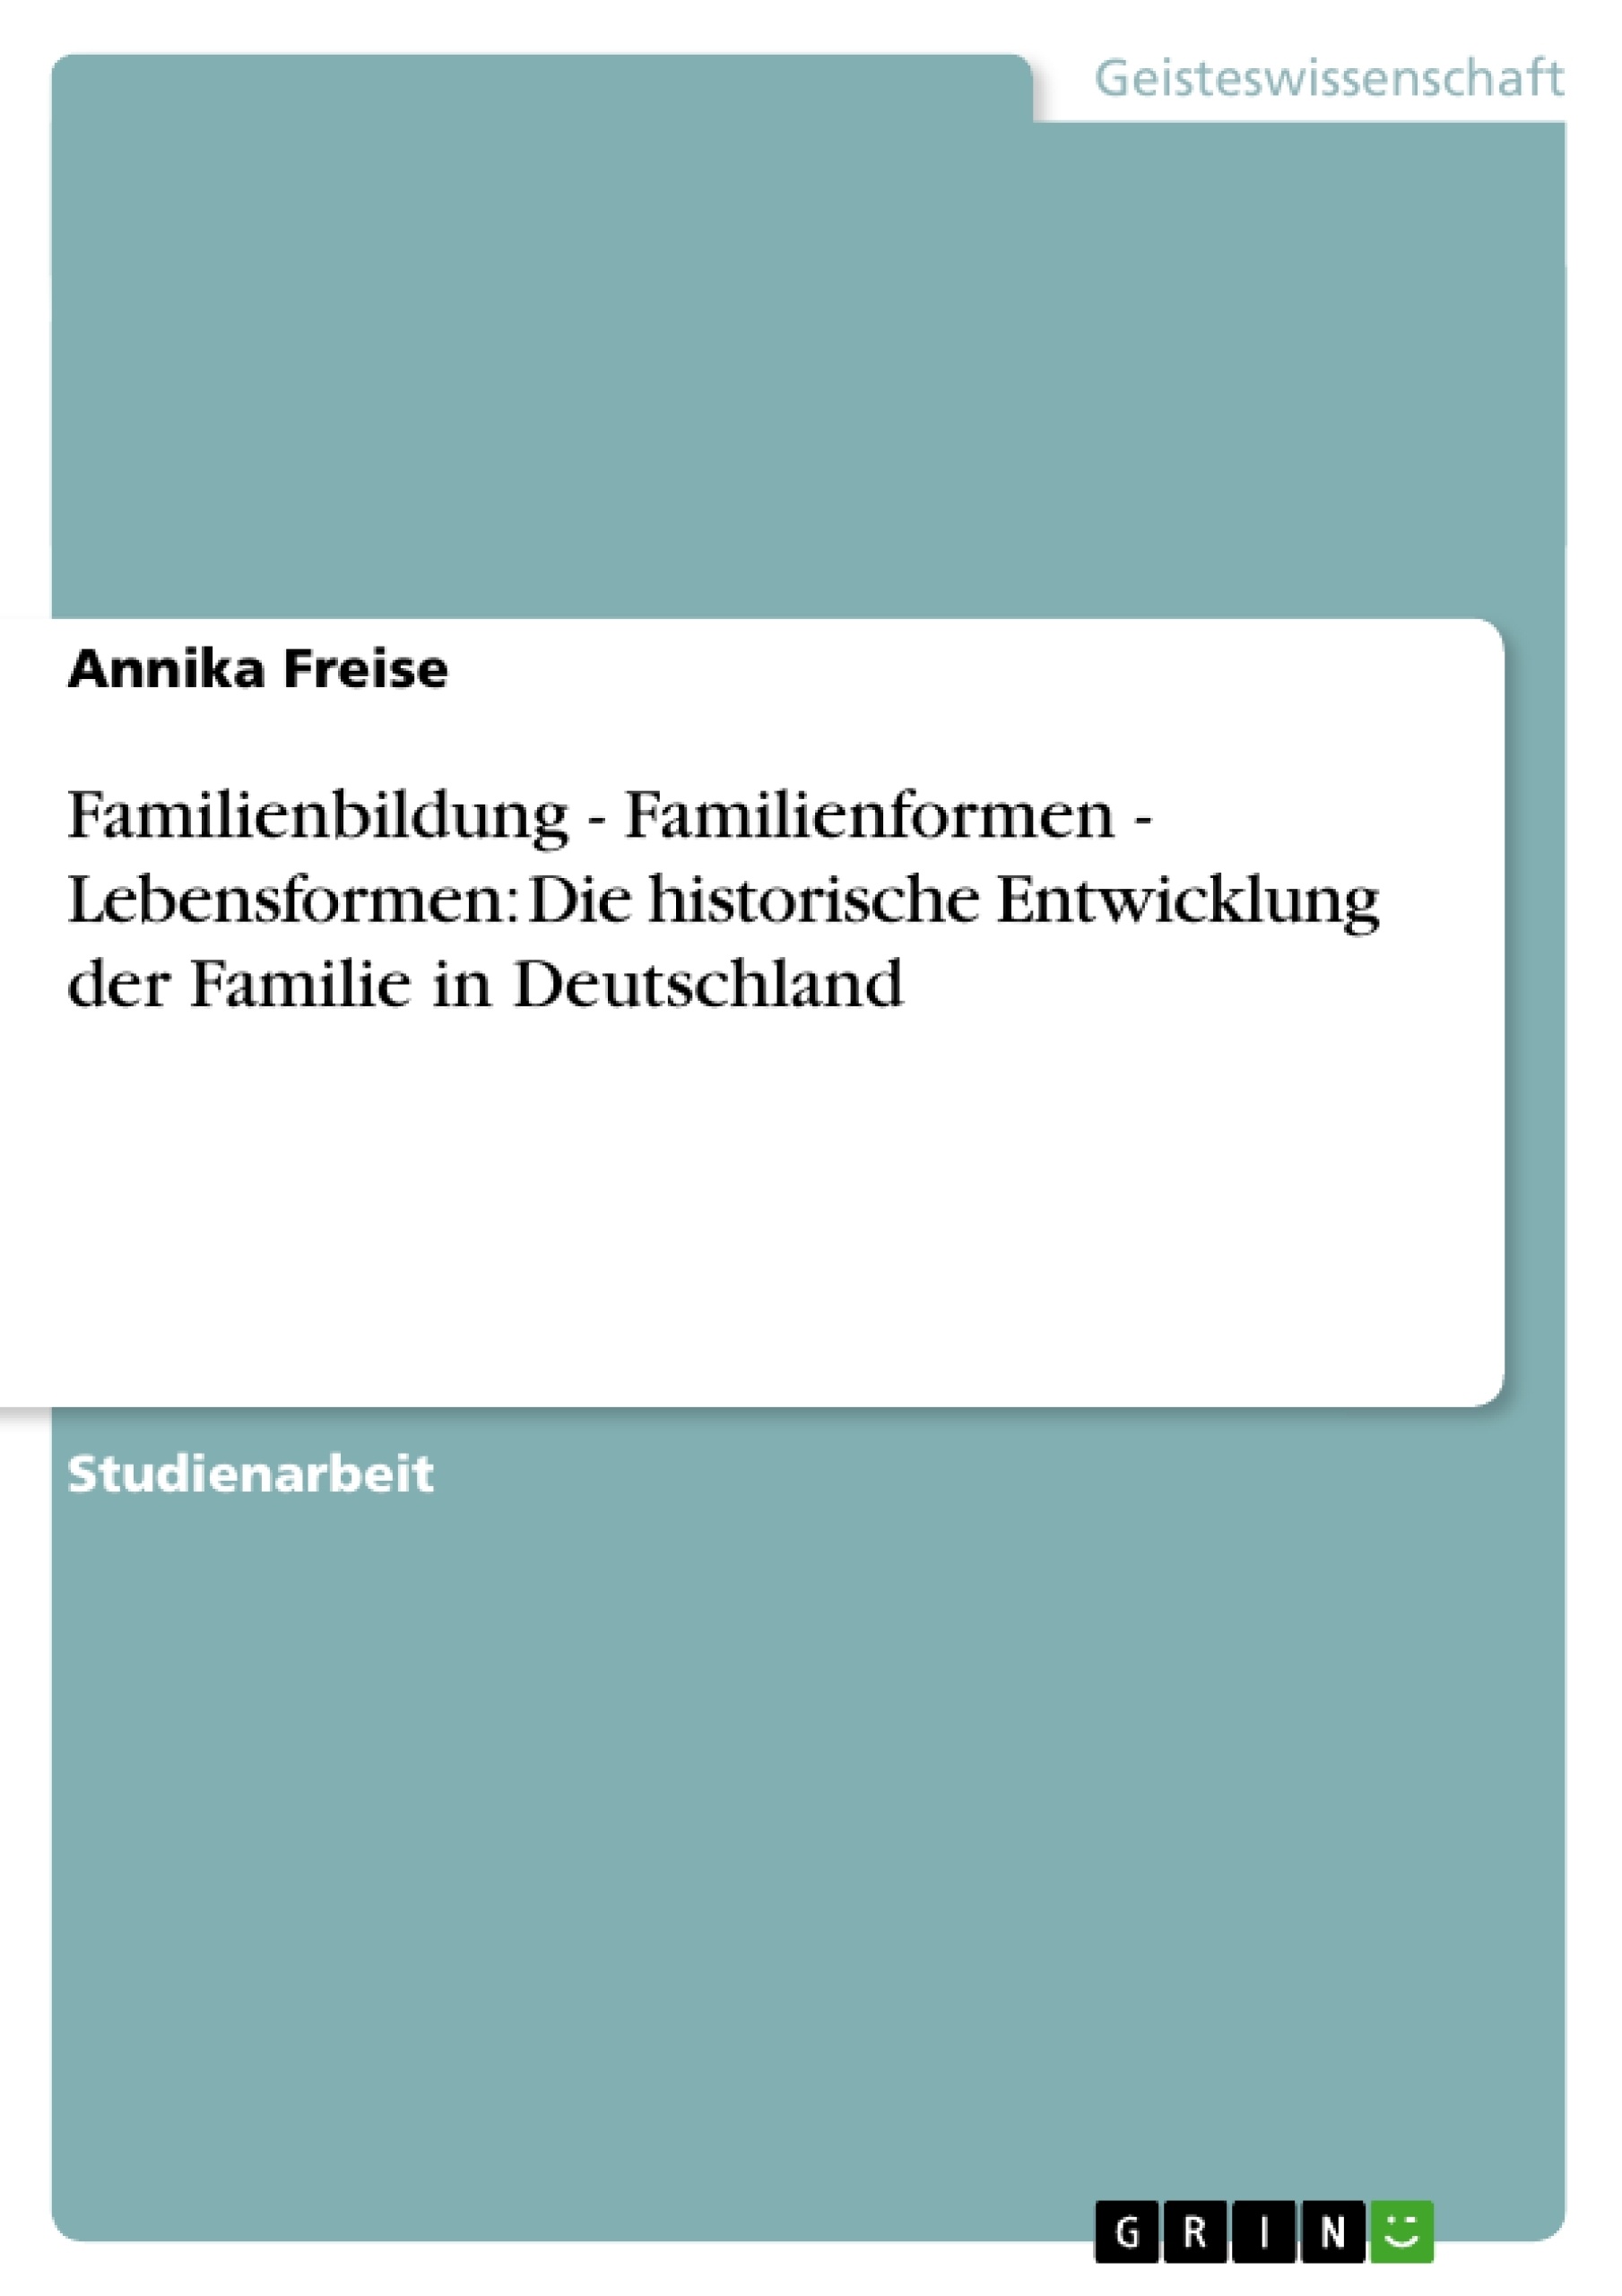 Título: Familienbildung - Familienformen - Lebensformen: Die historische Entwicklung der Familie in Deutschland